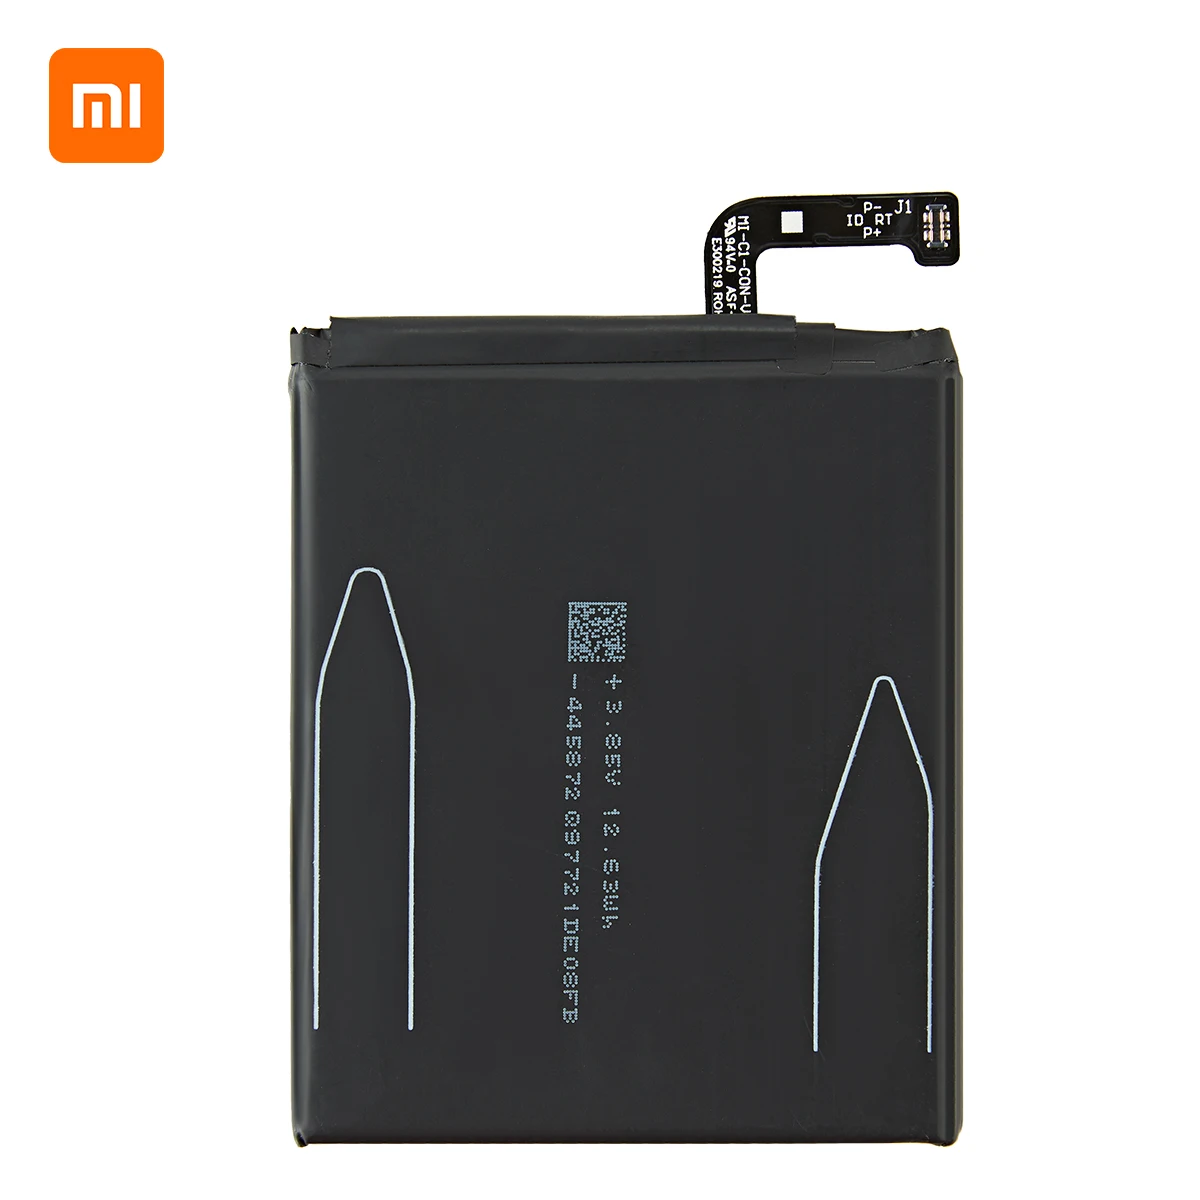 Xiao mi Originalni BM39 3350mAh Baterija Za Xiaomi 6 Mi 6 Mi6 BM39 Visoke Kakovosti Telefon Zamenjava Baterij